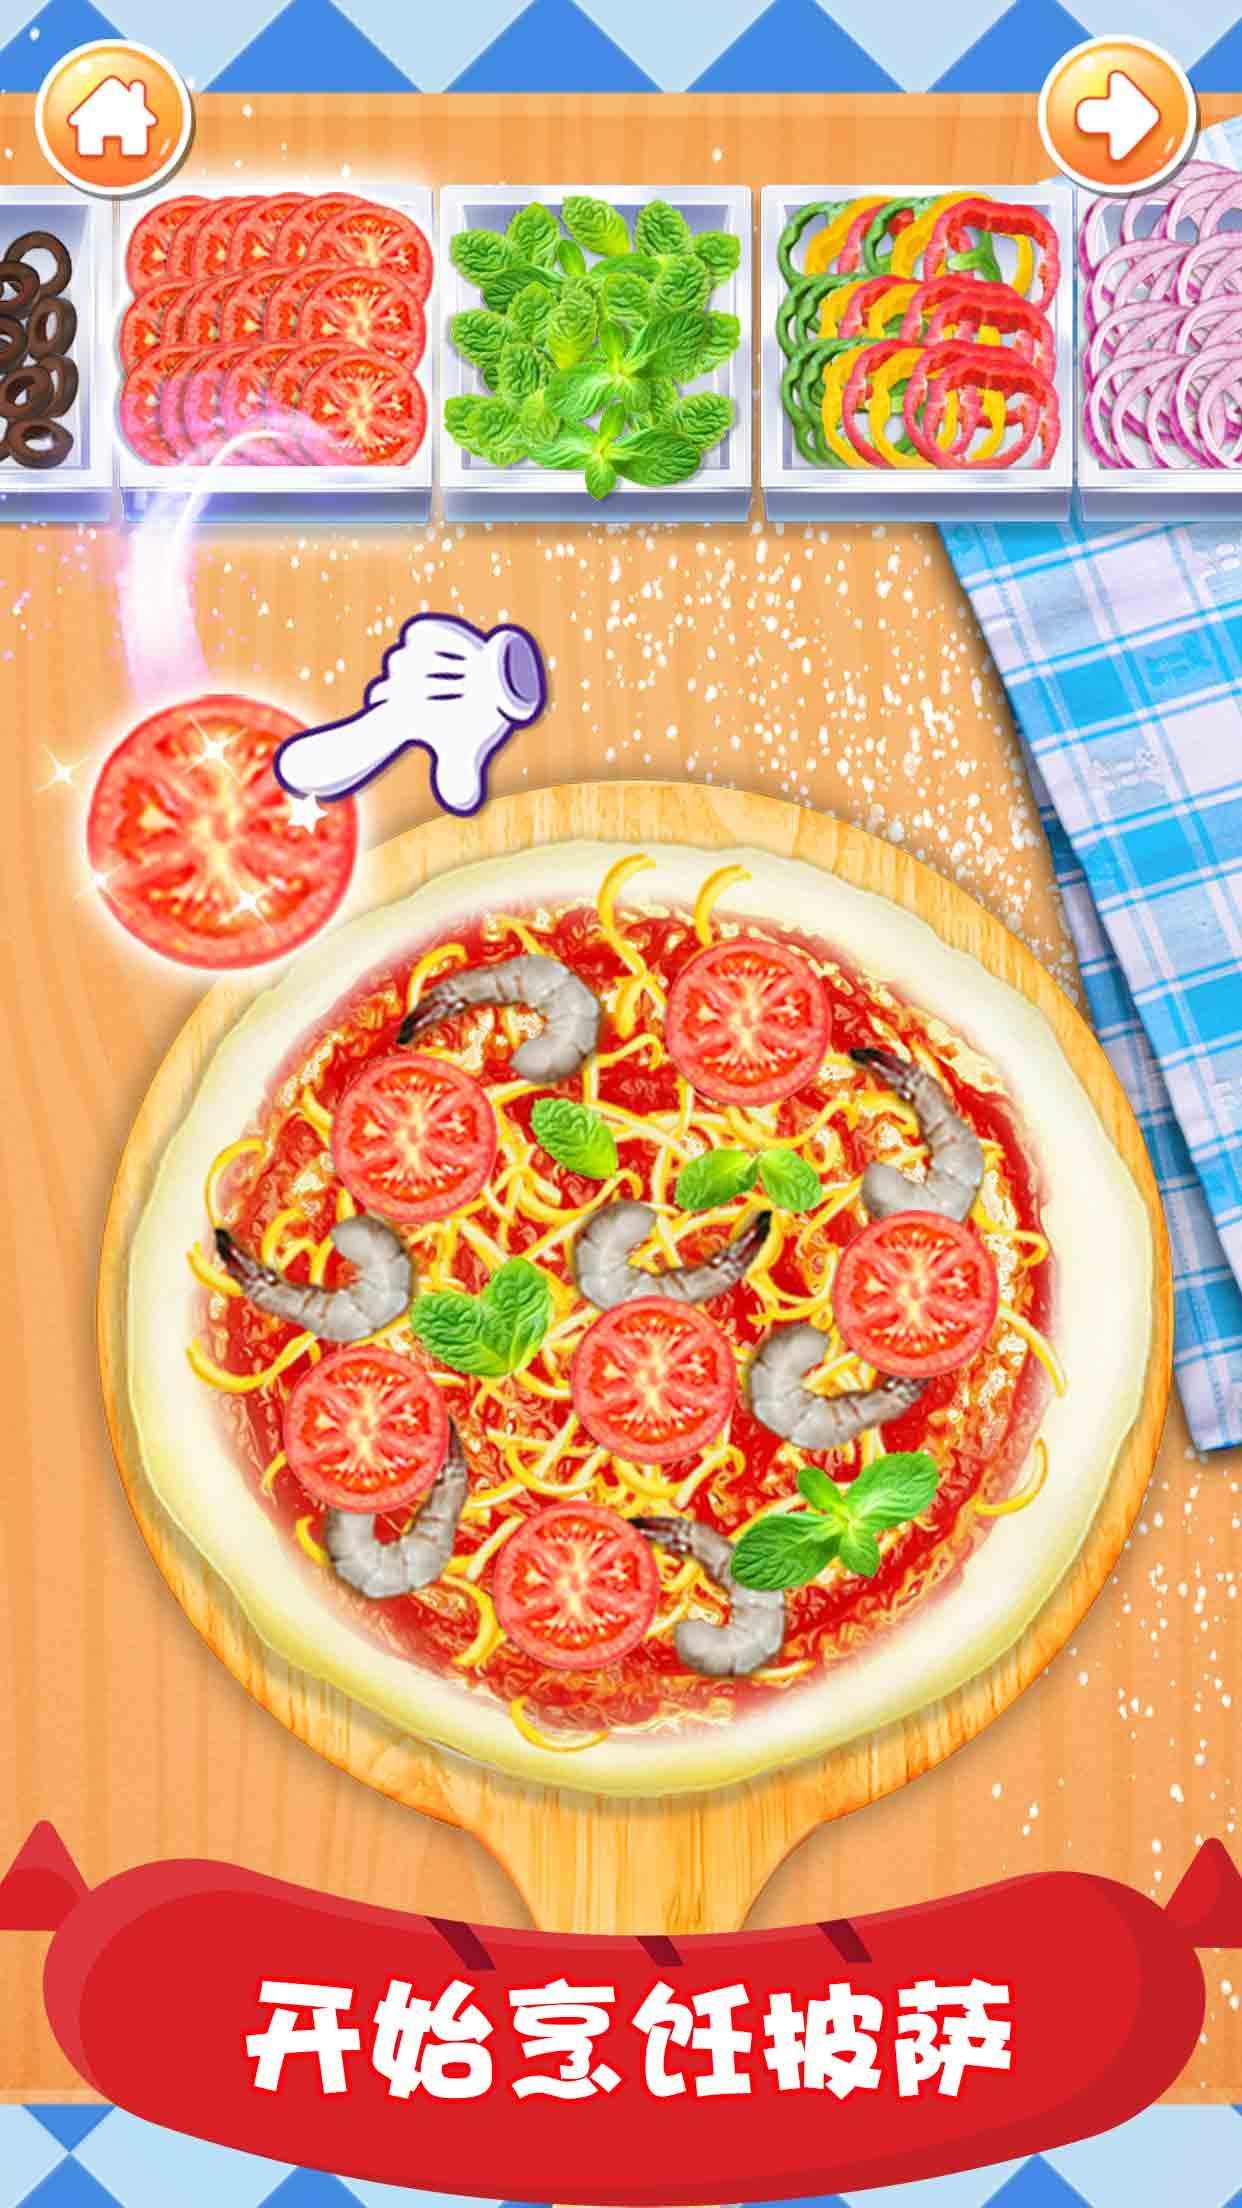 做饭游戏:披萨餐厅厨房烹饪小游戏大全游戏截图